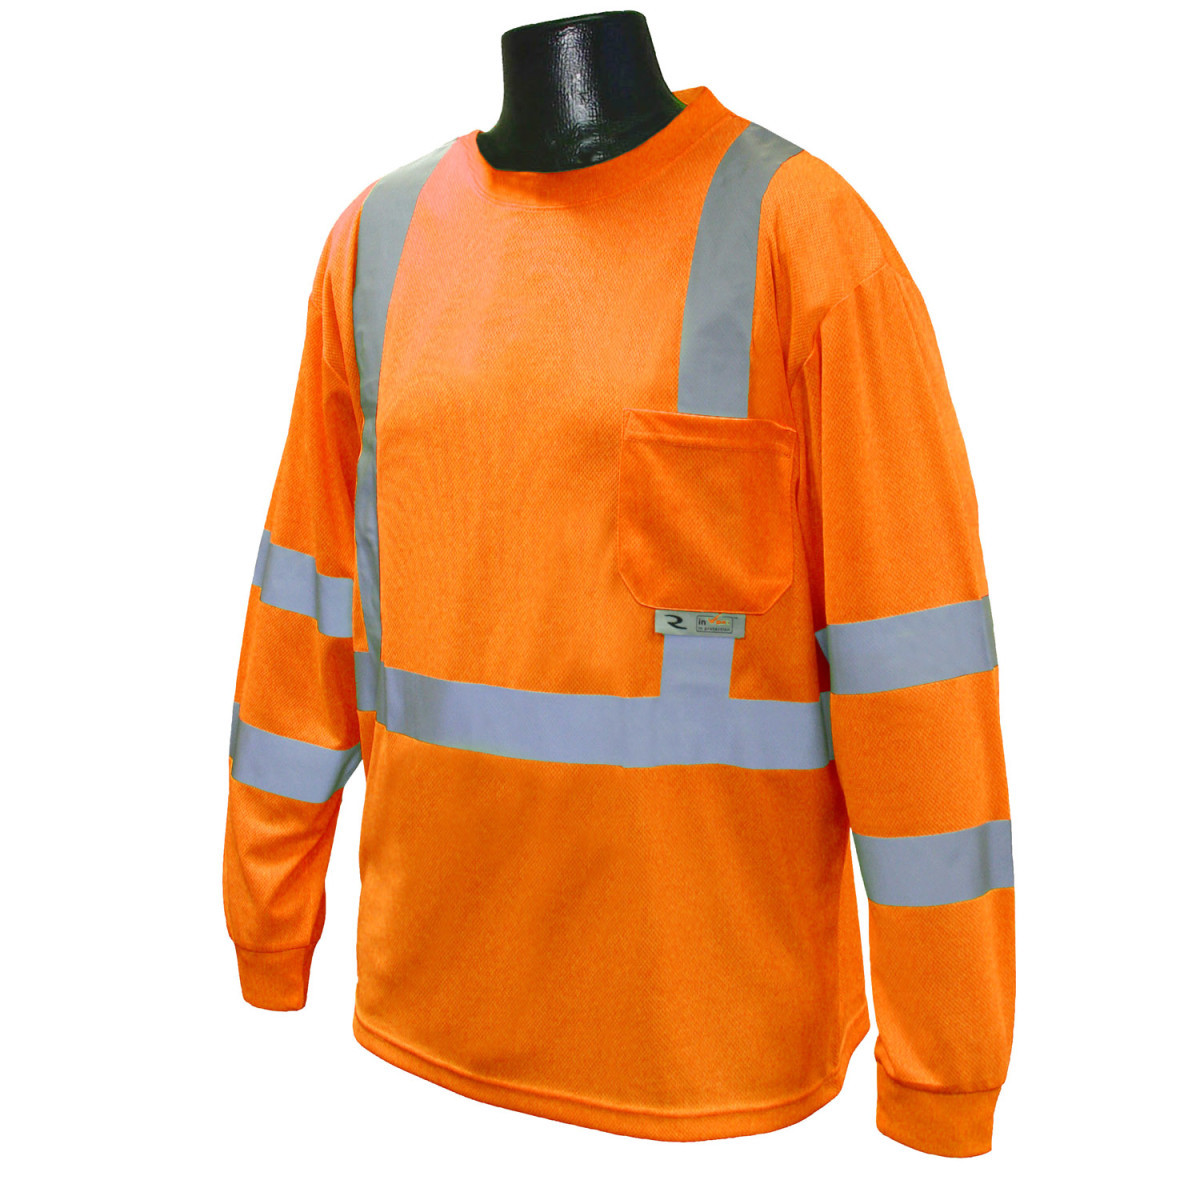 Radians, Inc. Large Hi-Viz Orange RadWear™ Moisture Wicking Birdseye Mesh T-Shirt